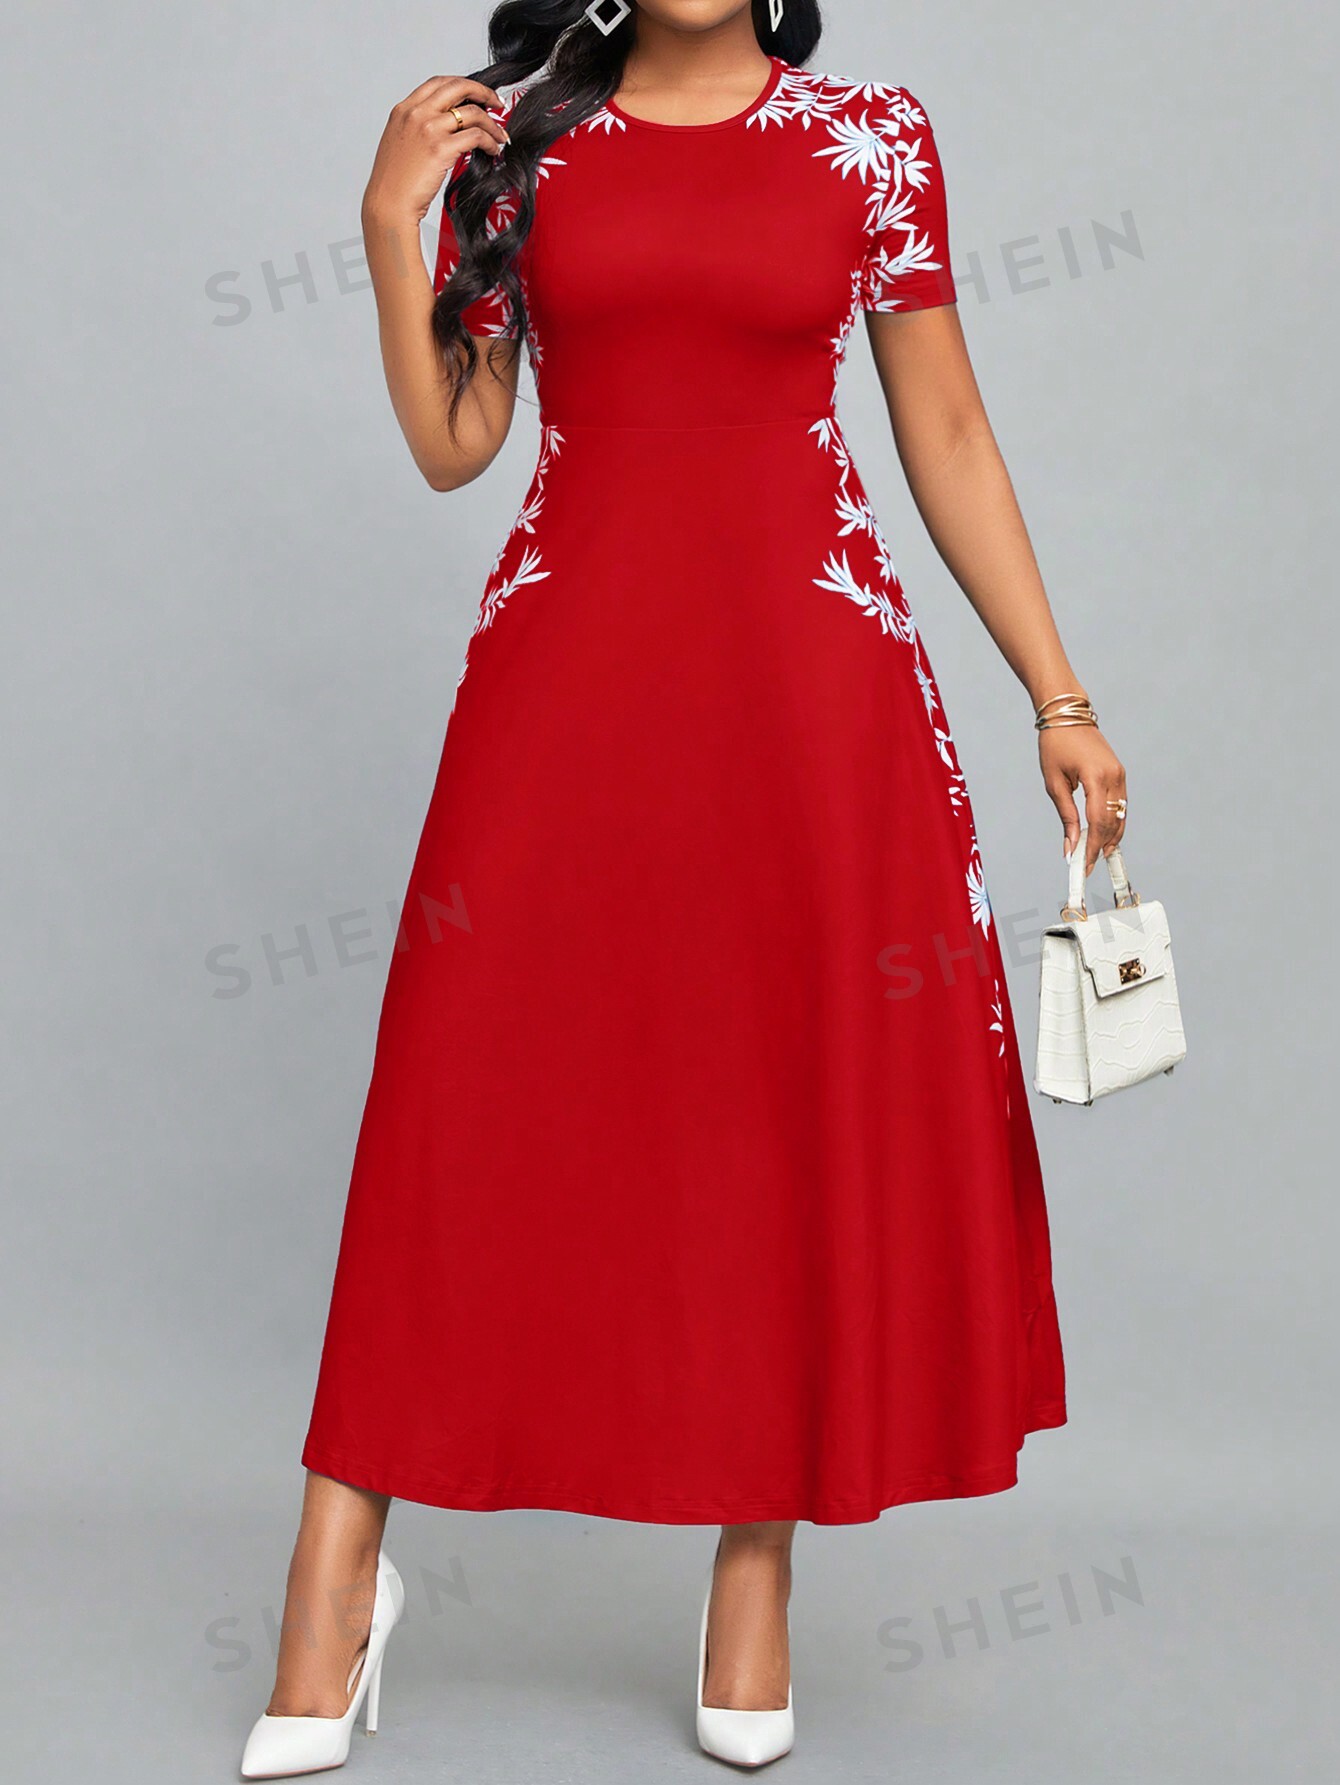 SHEIN Lady Женское платье с круглым вырезом и короткими рукавами с растительным принтом, красный и белый